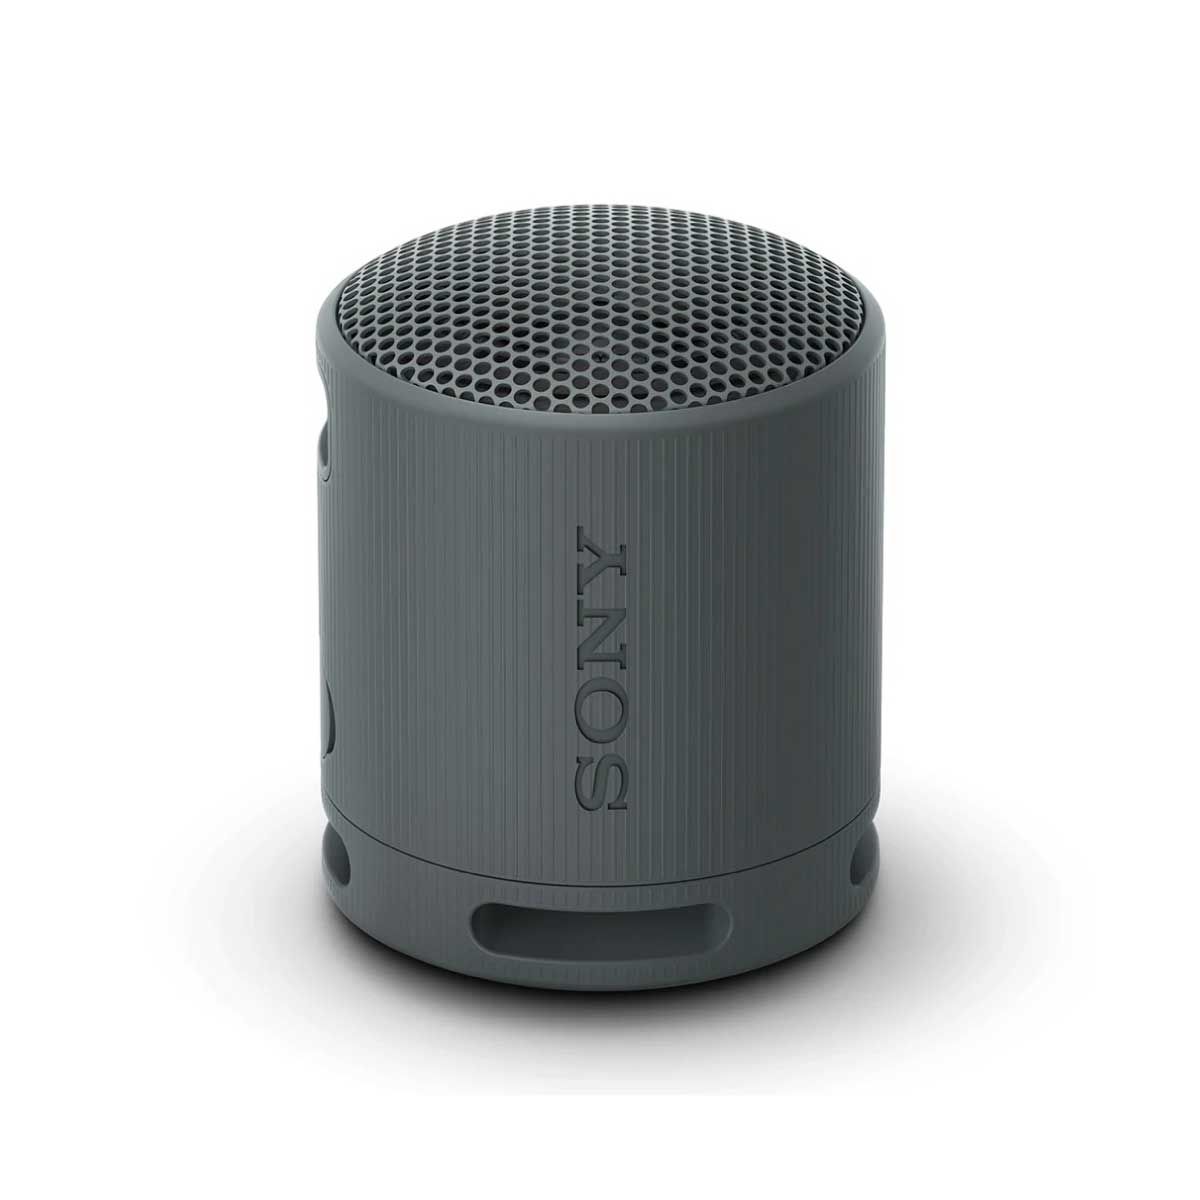 SONY ลำโพงบลูทูธ  รุ่น SRS-XB100 Wireless Speakers ลำโพงพกพา กันน้ำกันฝุ่น IP67